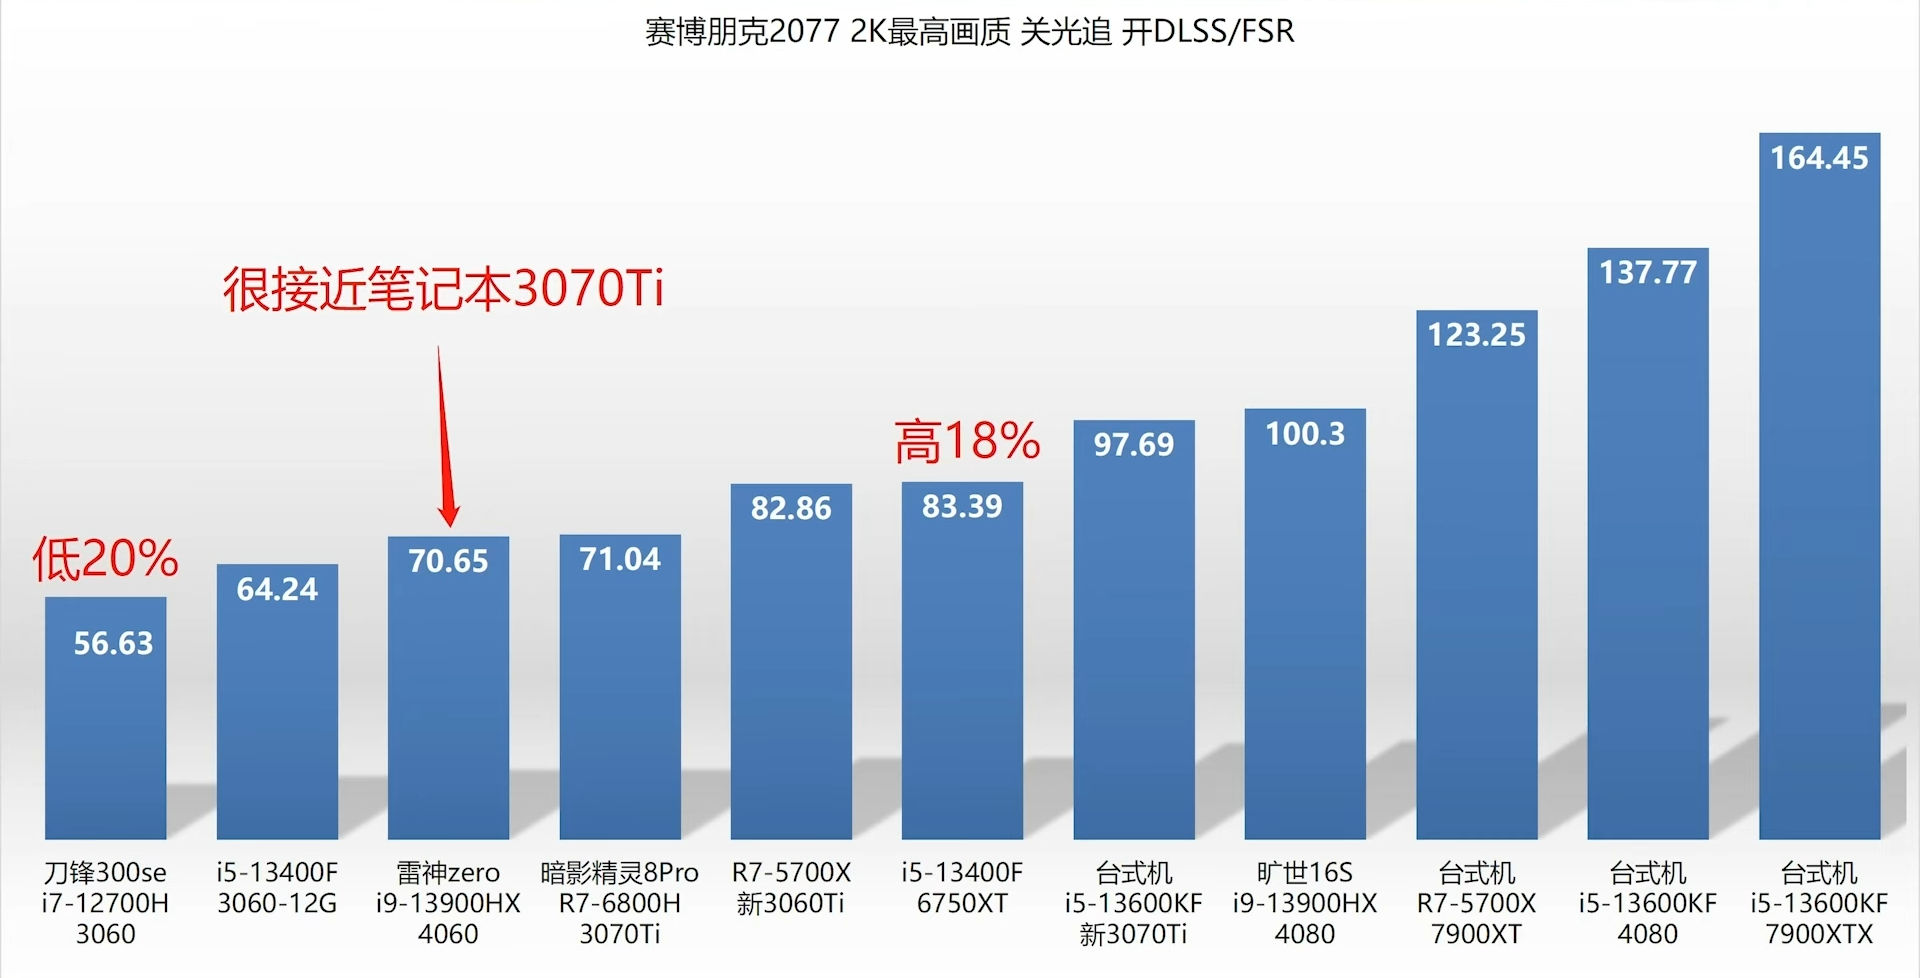 Nvidia RTX 4060 vs RTX 3060 vs RTX 2060: How do the 60-class GPUs compare?